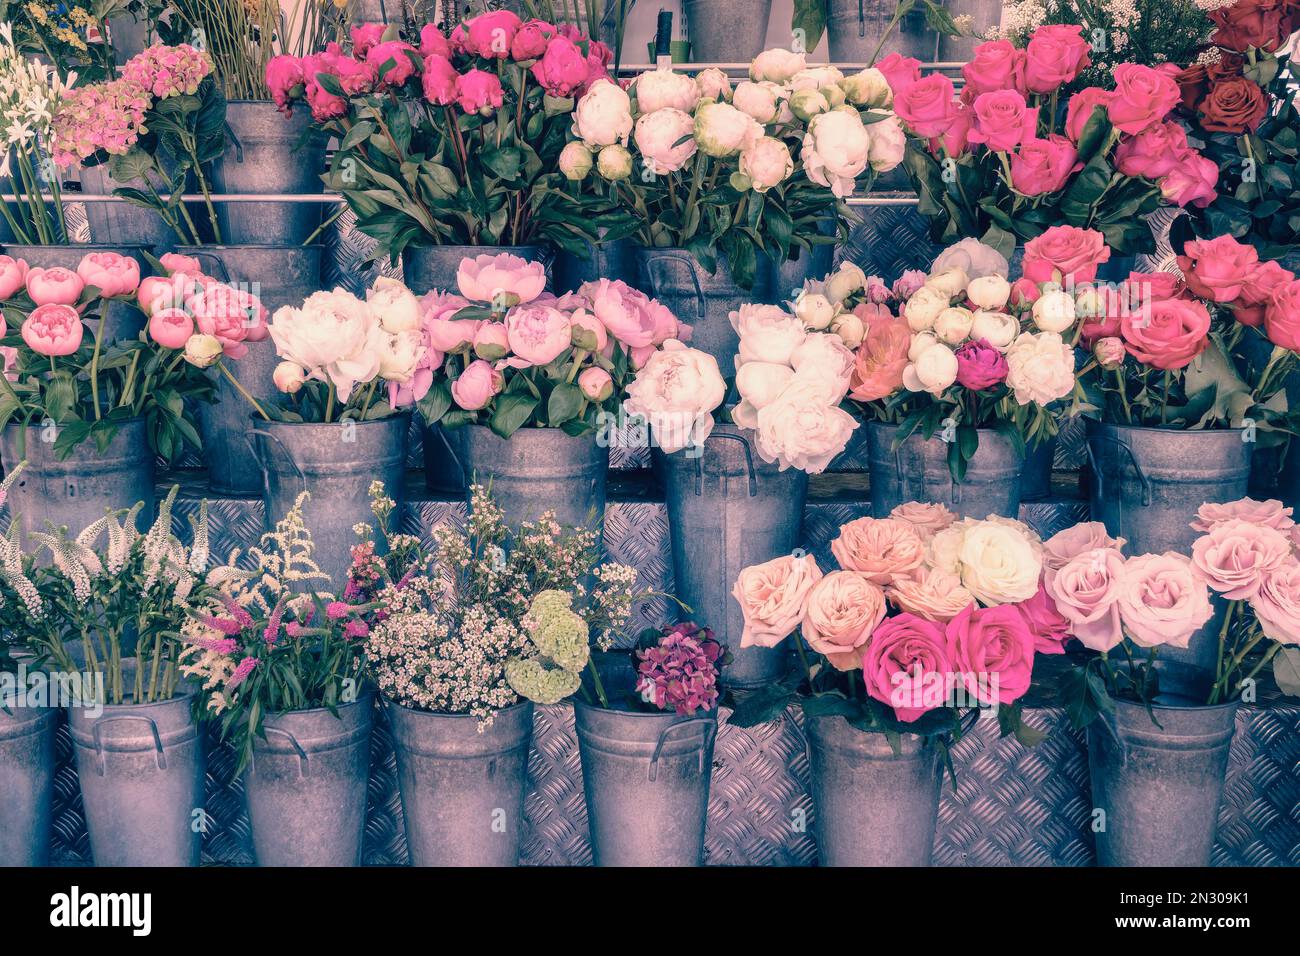 Blumenausstellung mit rosafarbenen Blumen einschließlich Rosen und Pfingstrosen in rustikalen Zinktöpfen Stockfoto